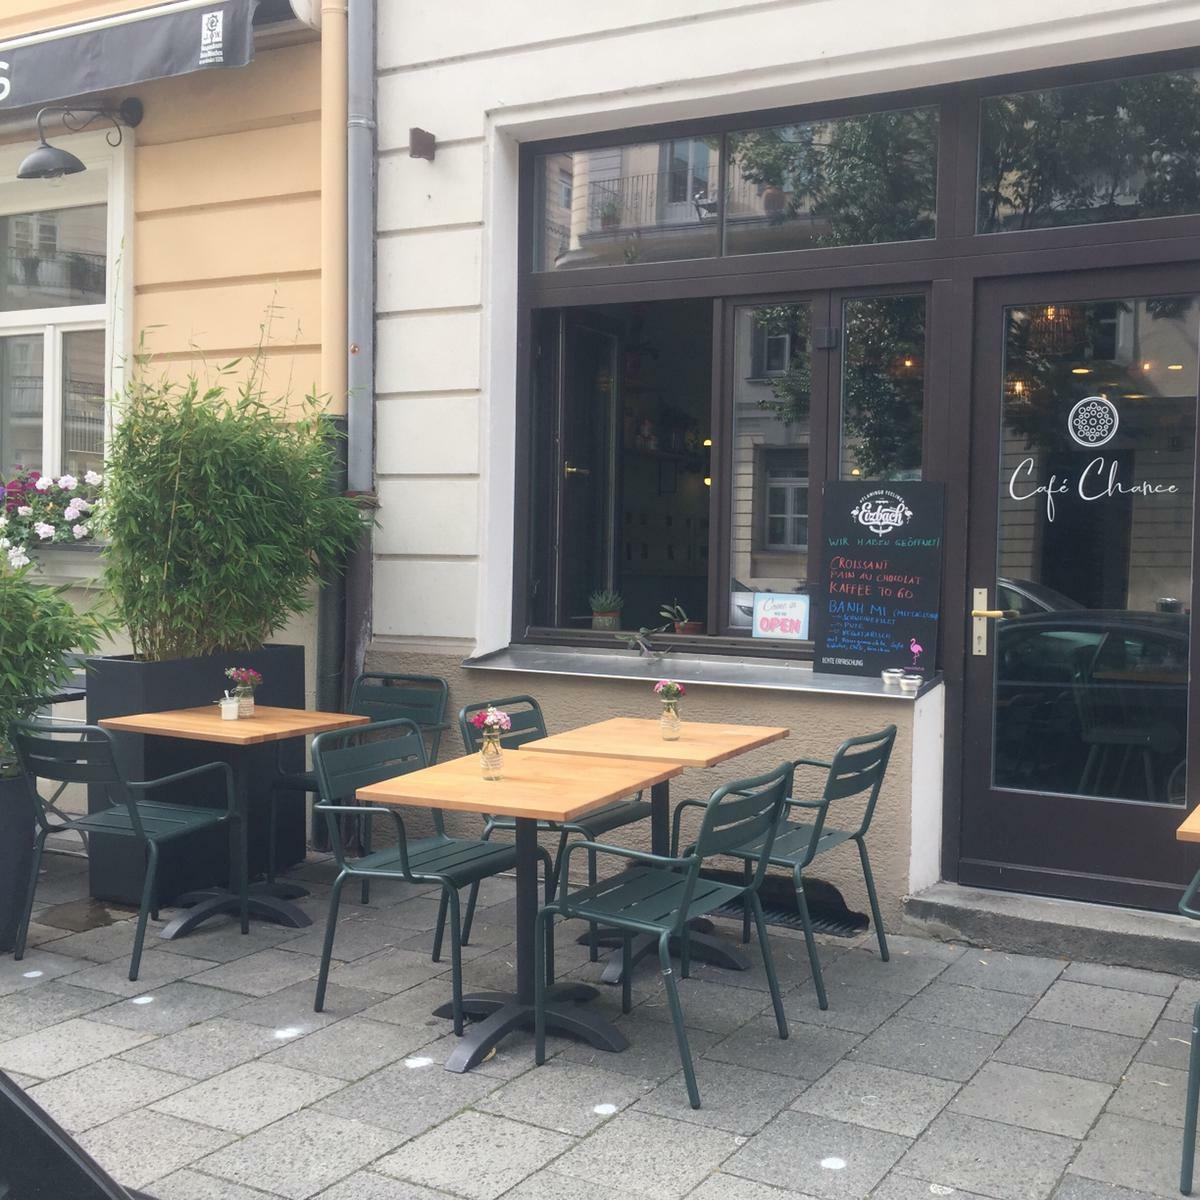 Restaurant "Cafe Chance" in München